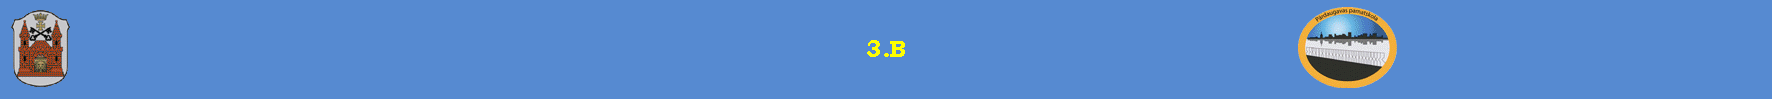 3.B